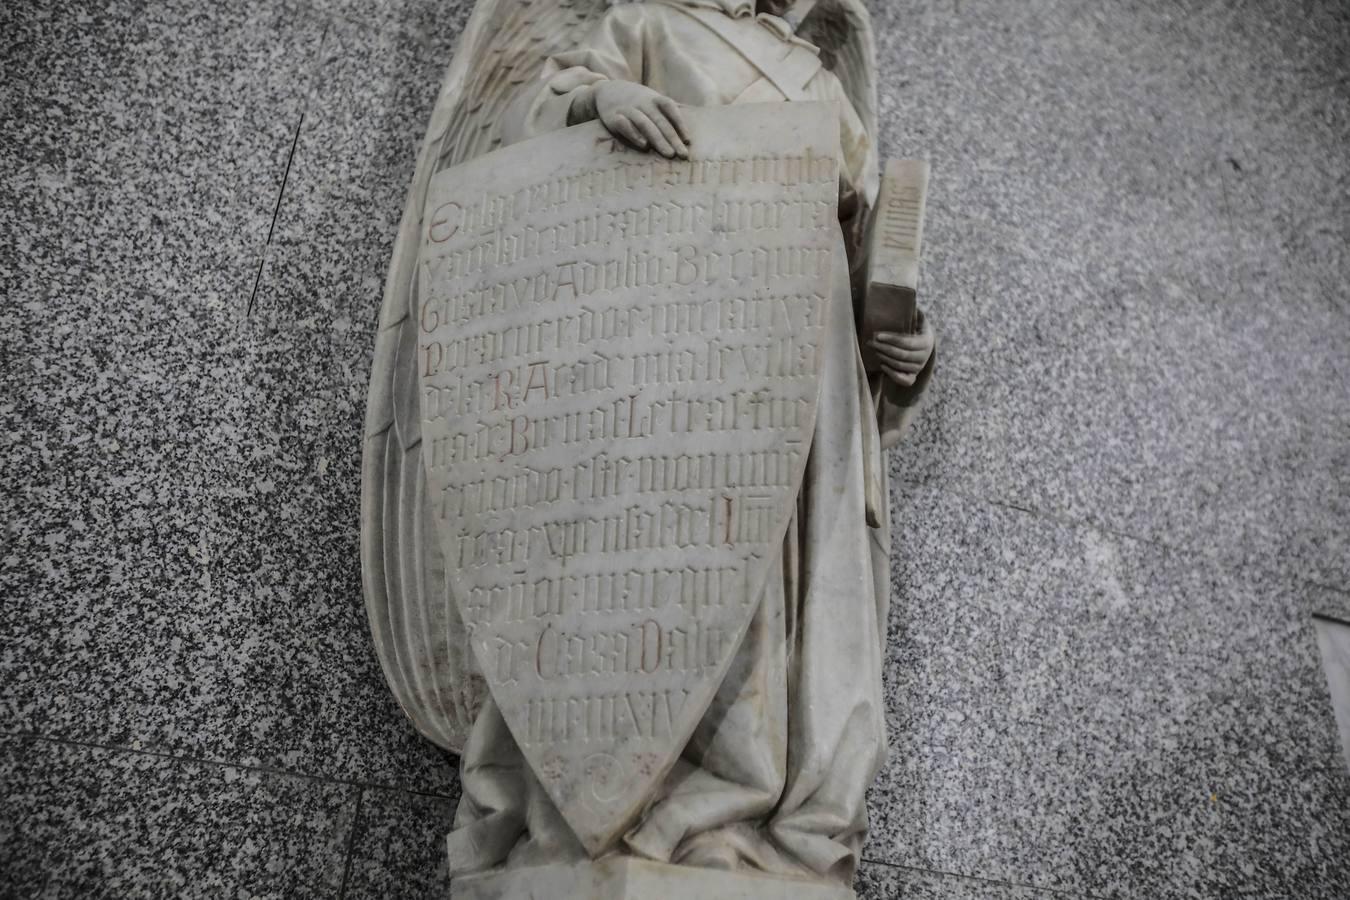 Detalle de la tumba de Becquer en el panteón de los Sevillanos Ilustres en la iglesia de La Anunciación